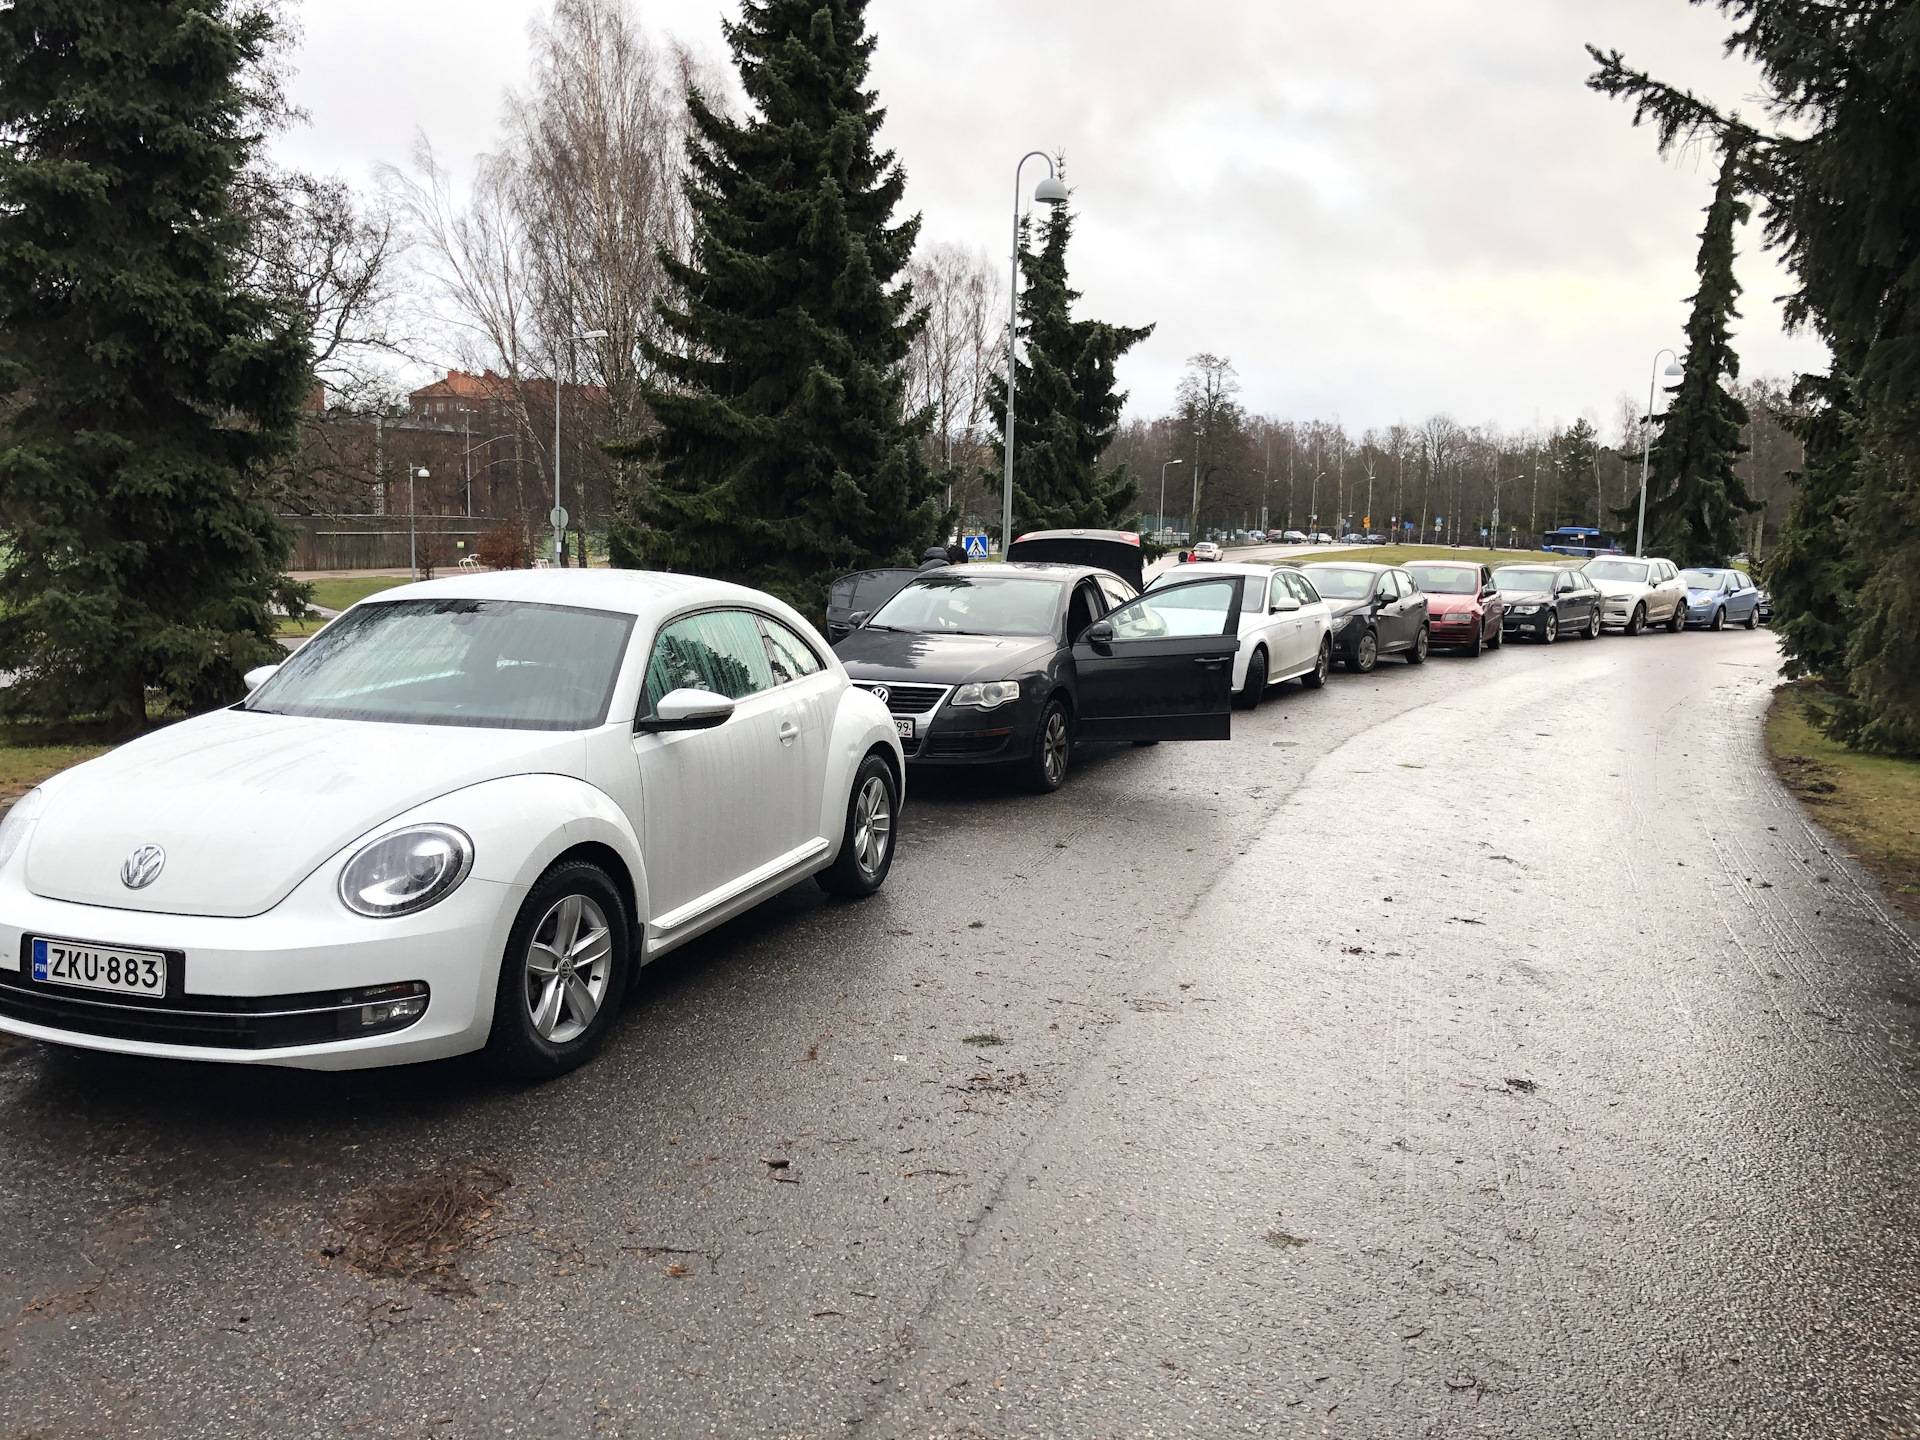 В финляндию на машине: всё про автопутешествие в финляндию